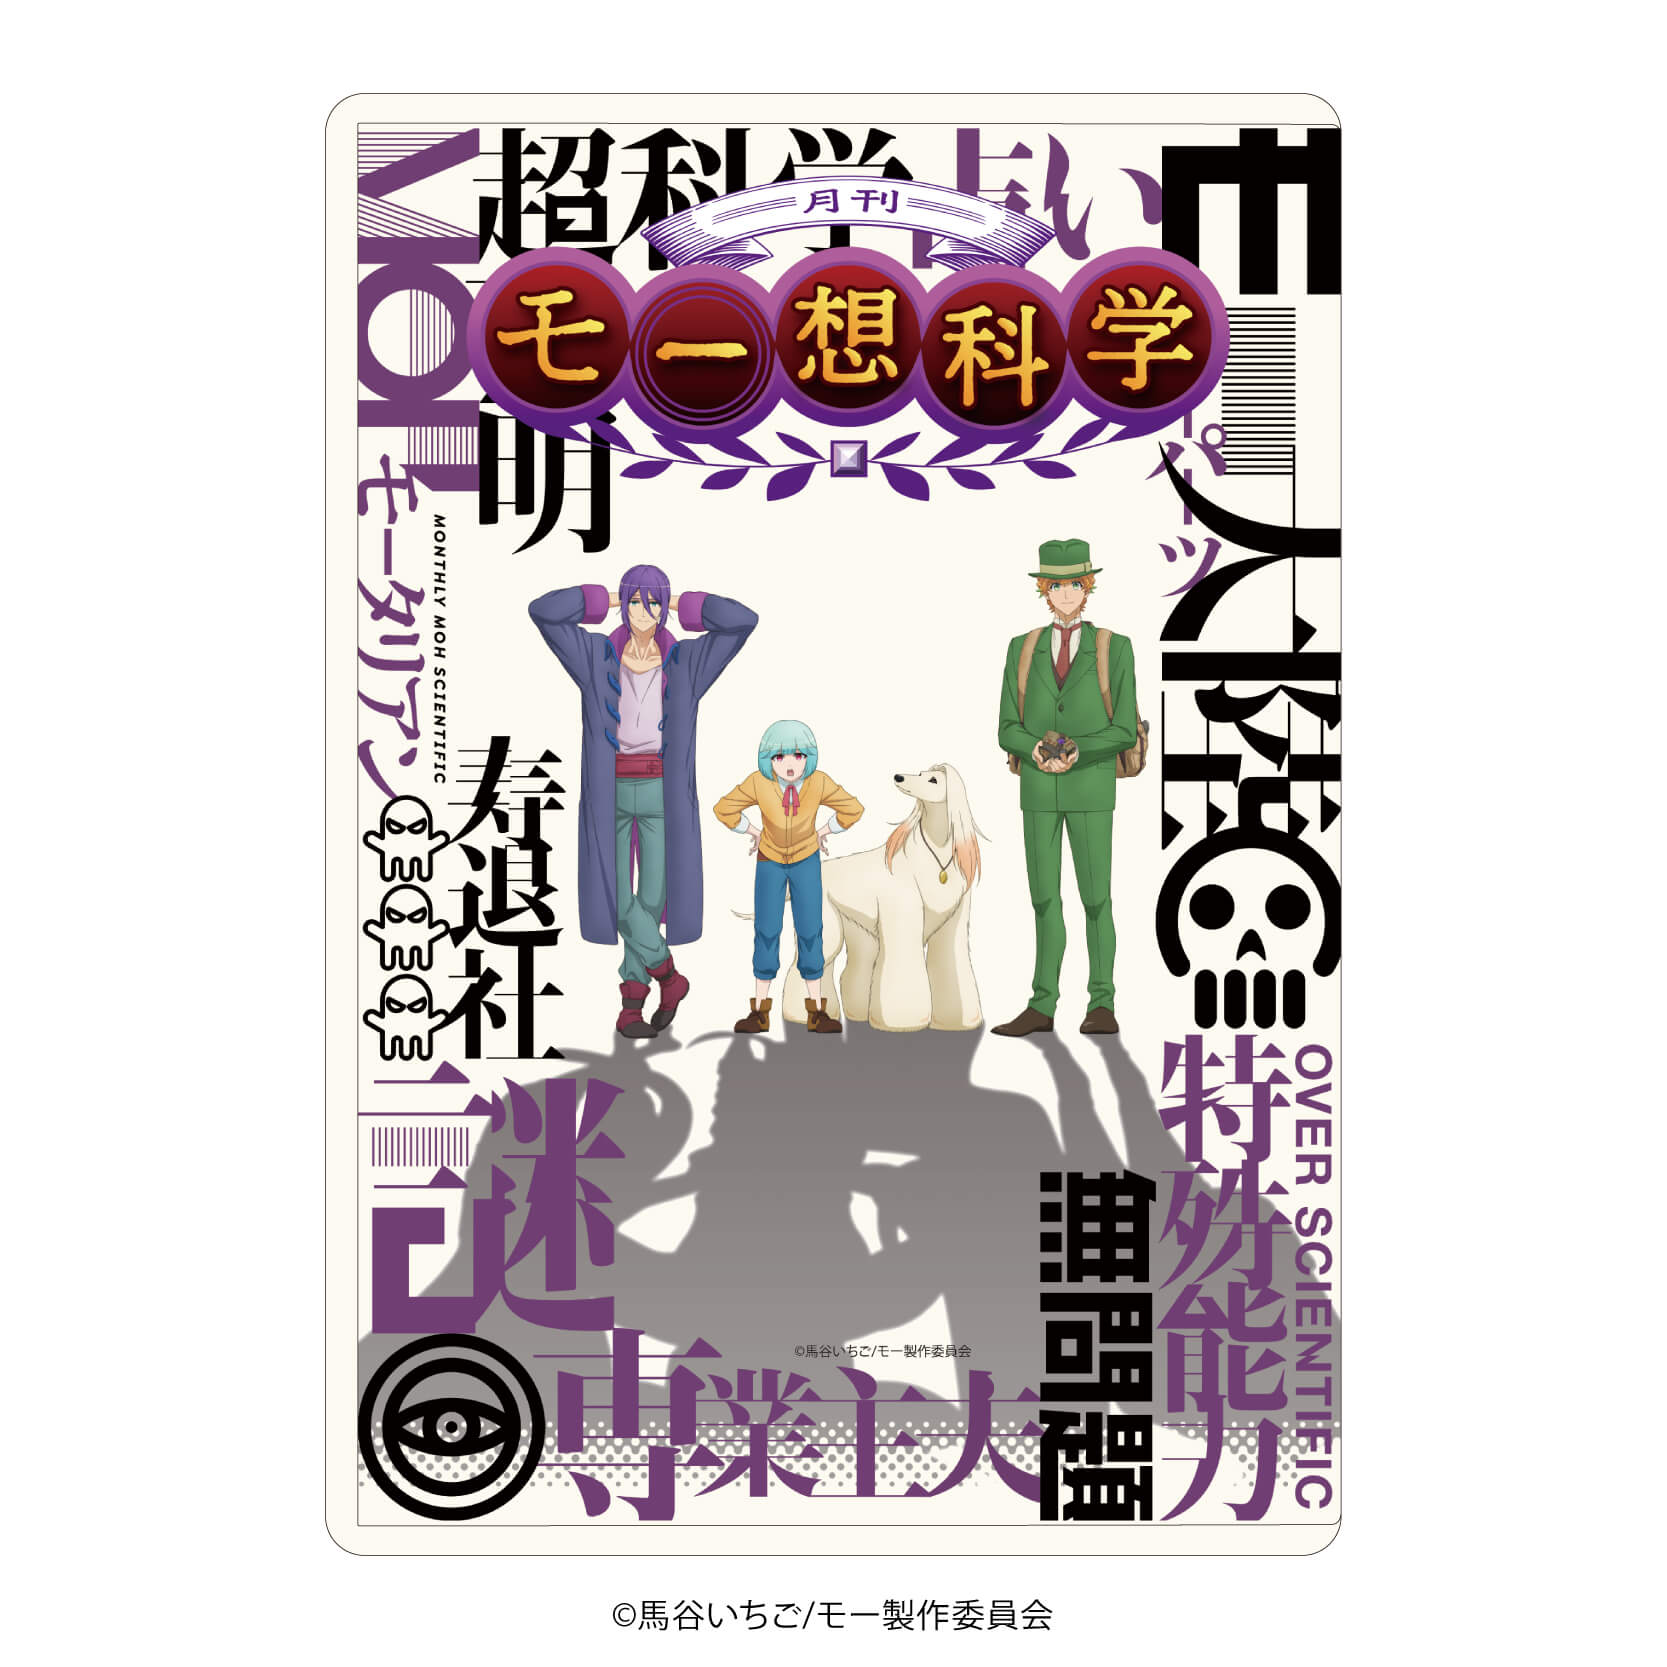 キャラクリアケース「月刊モー想科学」01/キービジュアル(公式イラスト)